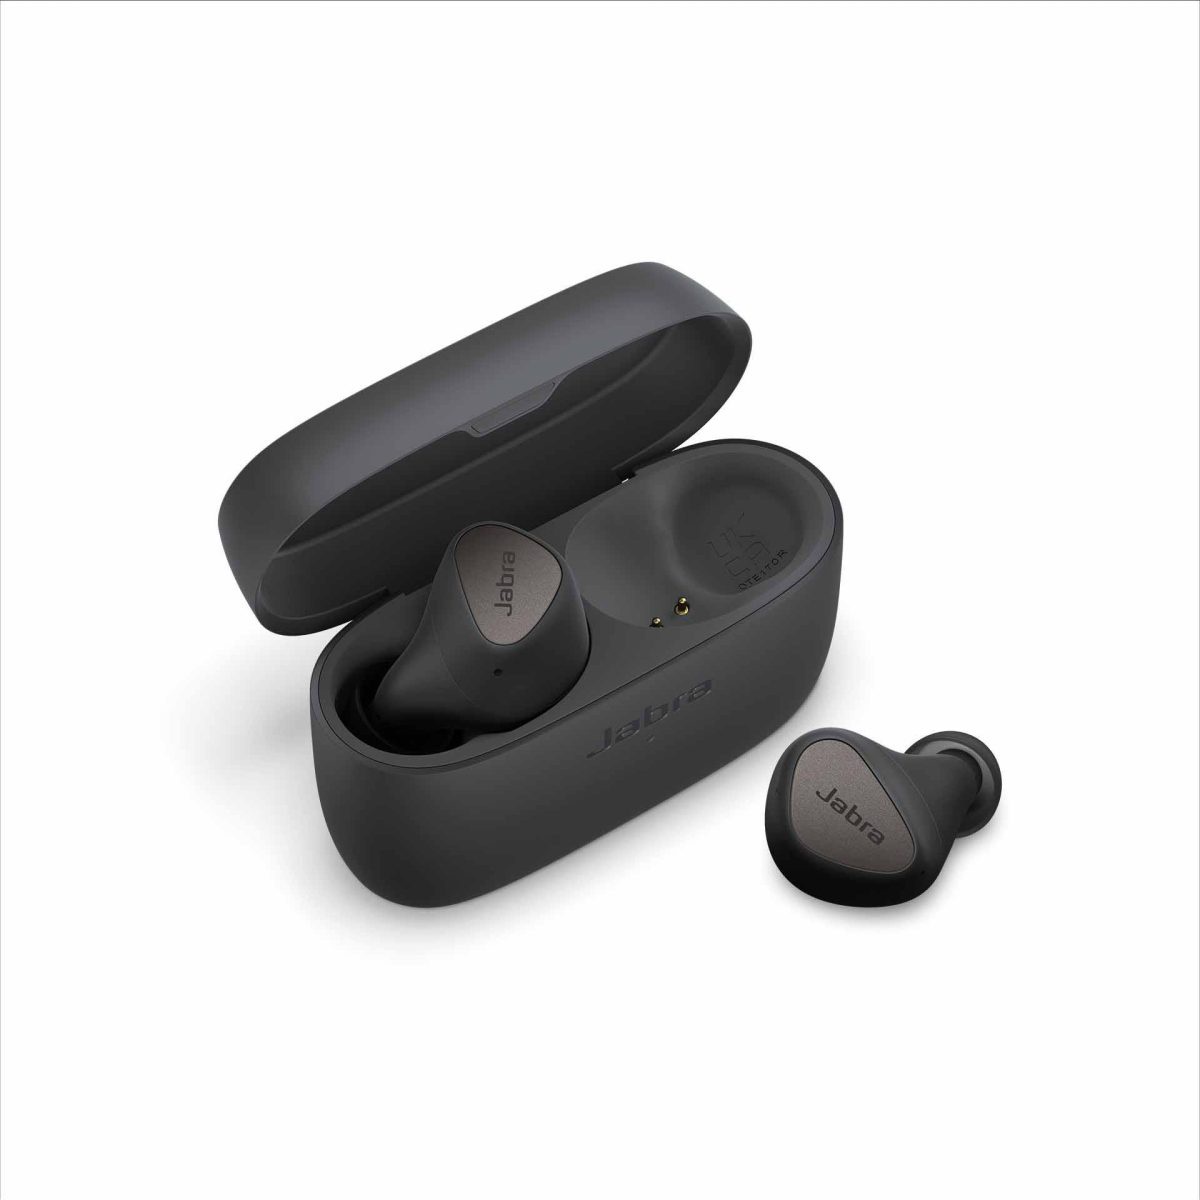 อาร์ทีบีฯ เปิดตัวหูฟังทรูไวร์เลสรุ่นใหม่ล่าสุด Jabra Elite 4 โดดเด่นด้วยเทคโนโลยี Bluetooth Multipoint จับคู่ 2 อุปกรณ์ได้อย่างรวดเร็ว